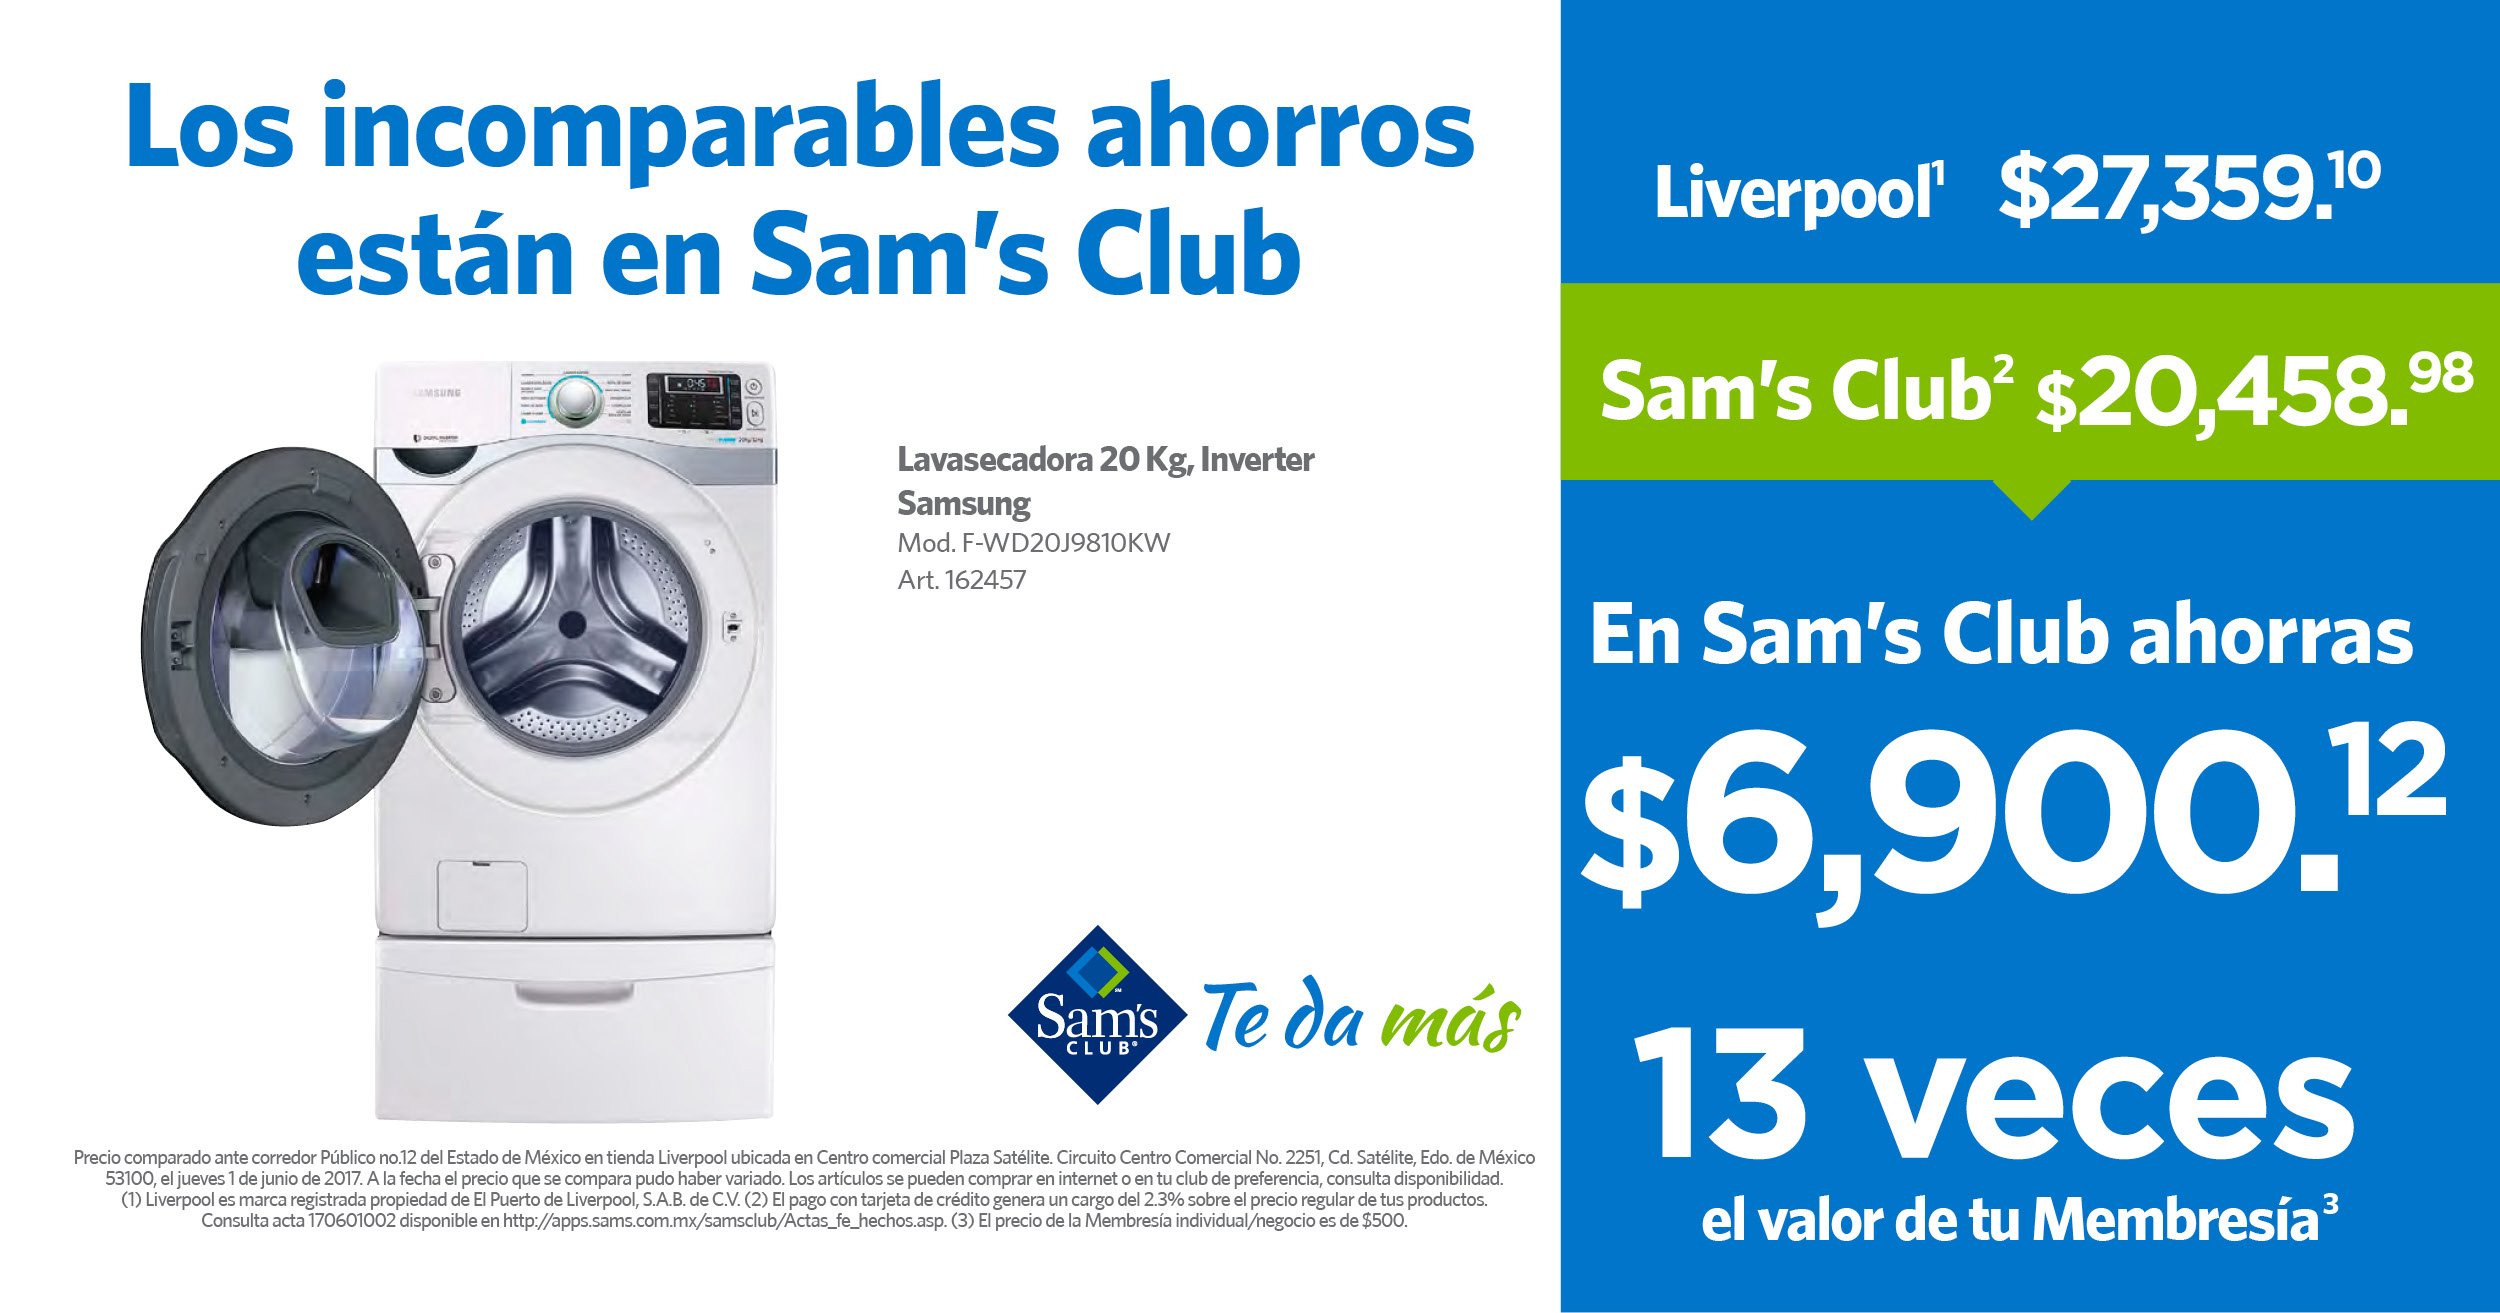 Sam's Club México on "Más ahorros sólo con tu Membresía Sam's Club. y compruébalo. Consulta el acta aquí: https://t.co/iY4NoH7yZ3 https://t.co/GSMmyXE9zq" / Twitter